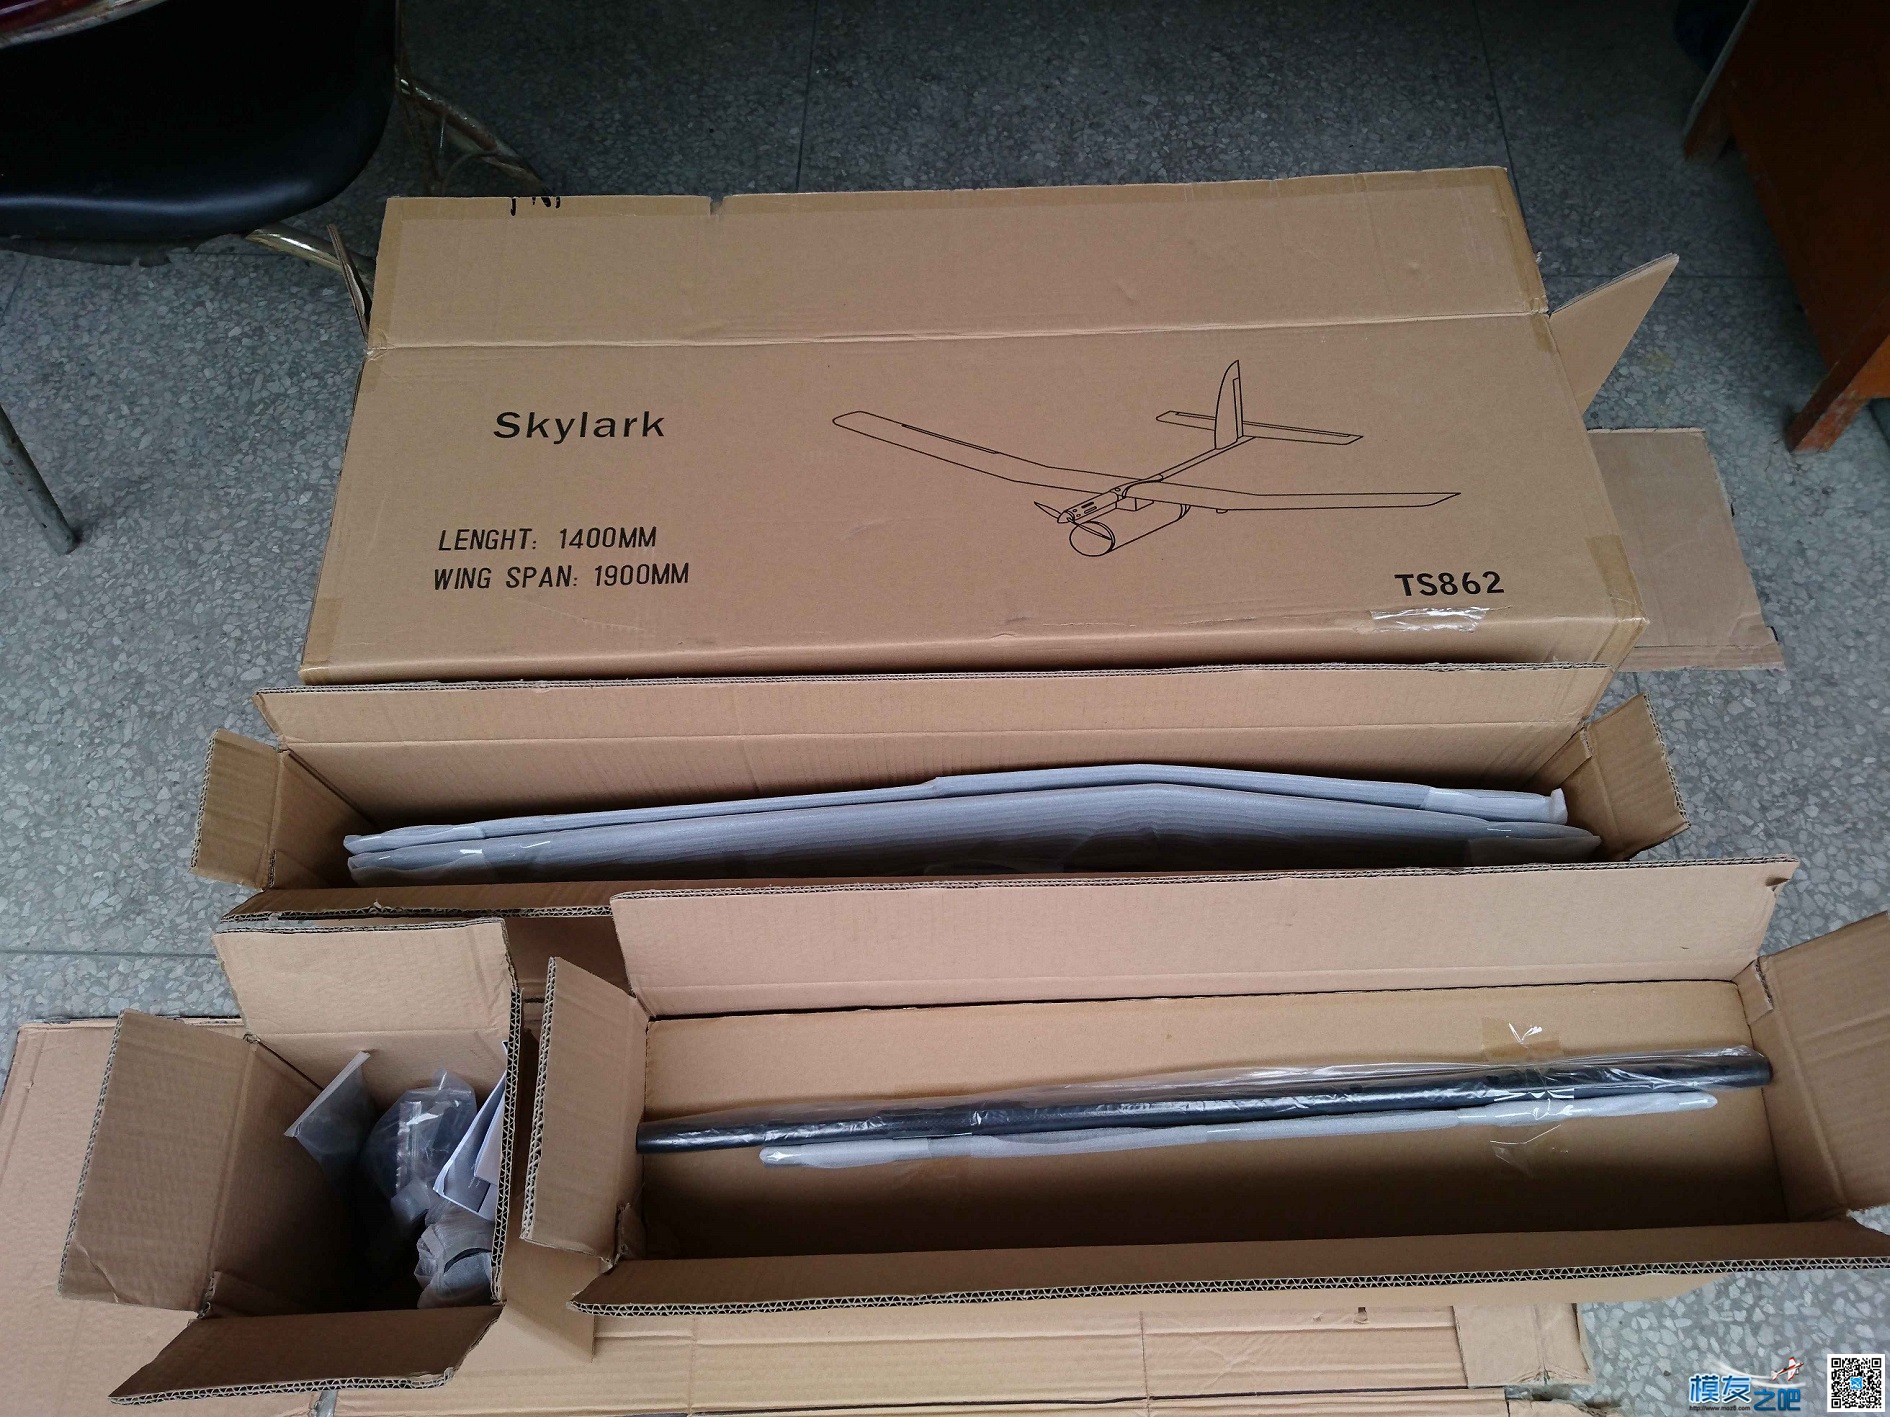 天盛模型国内首款机型 Skylark 全新概念固定翼FPV载机 开箱贴 无人机,模型,固定翼,舵机,电调 作者:模友之吧 6147 